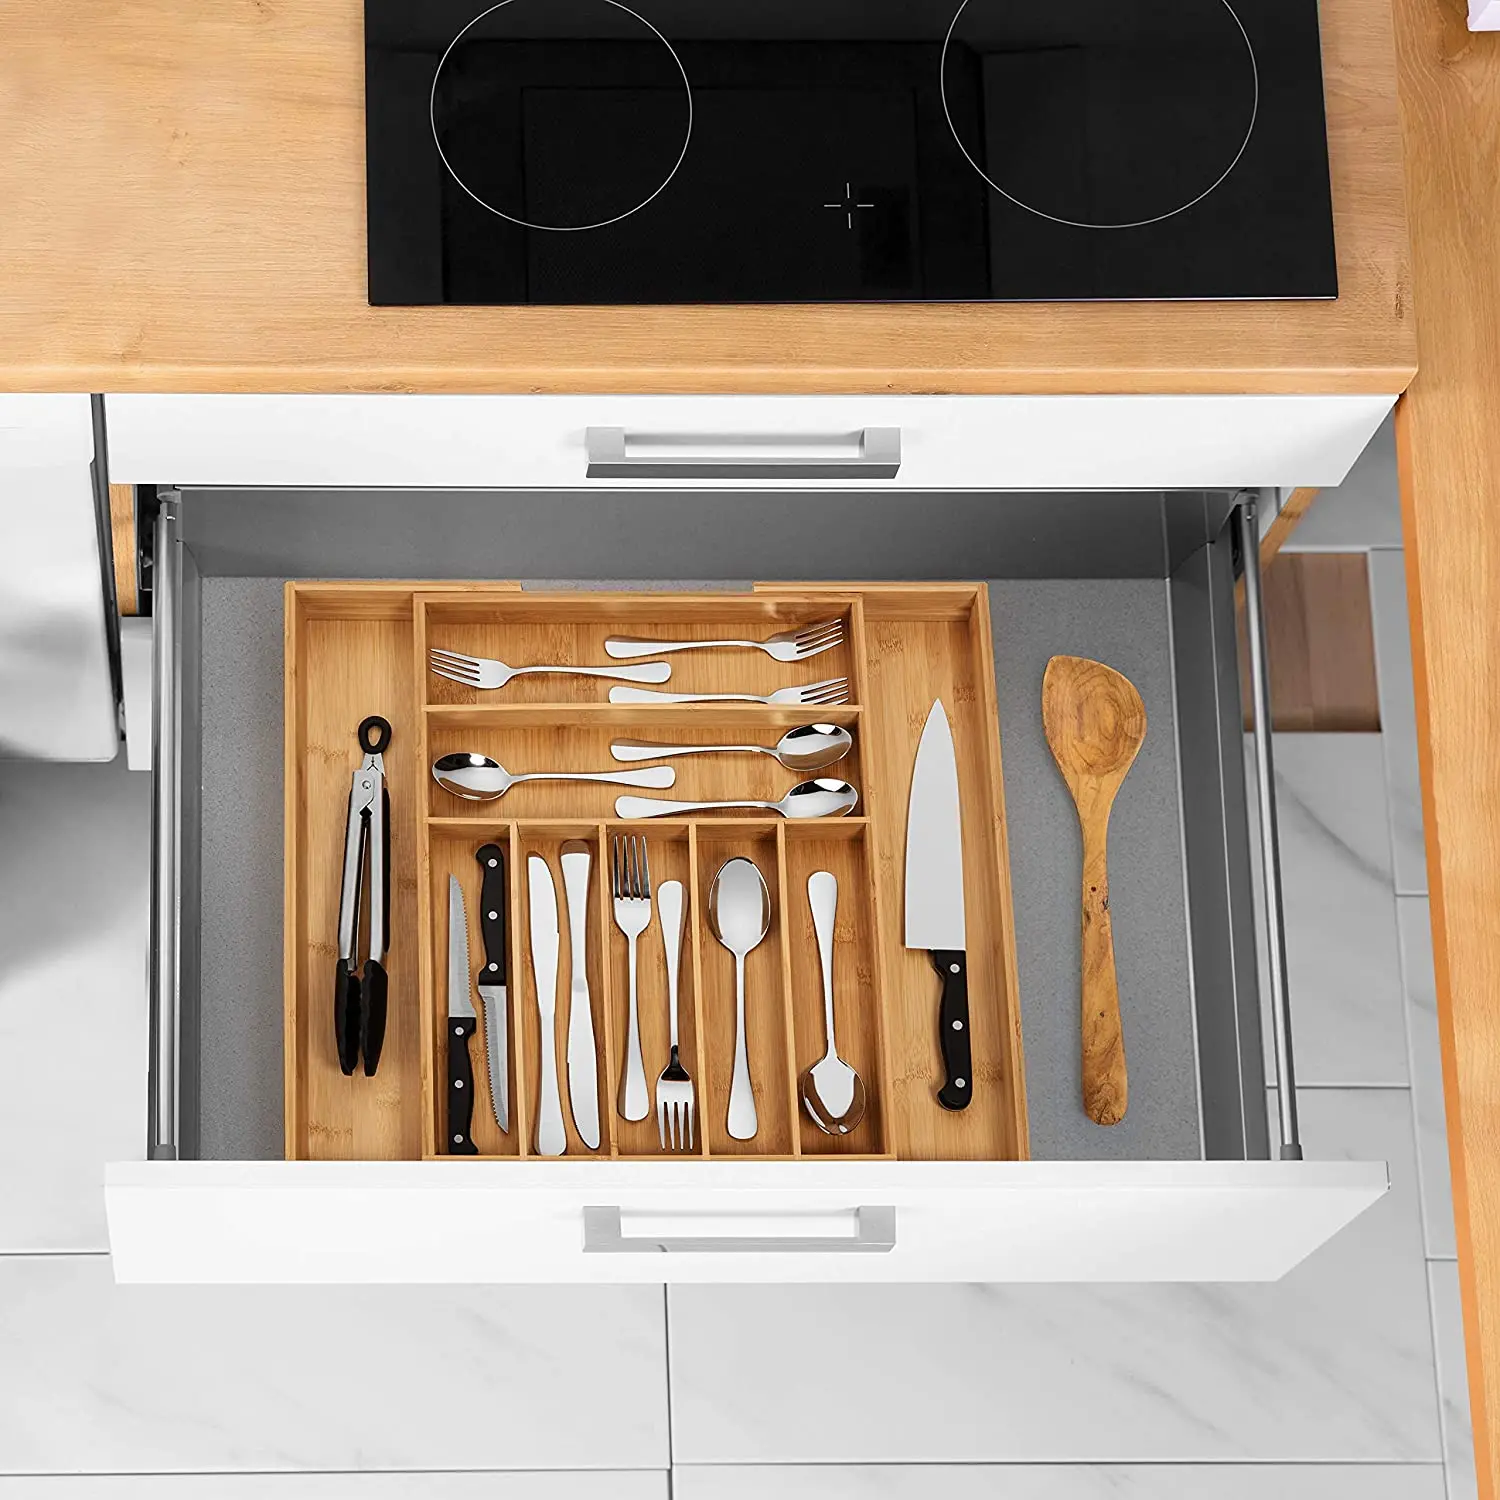 Cucina cassetto Organizzatore retrattile Argenteria Posate Posate da tavola Organizzatore Storage Box Accessori cucina 